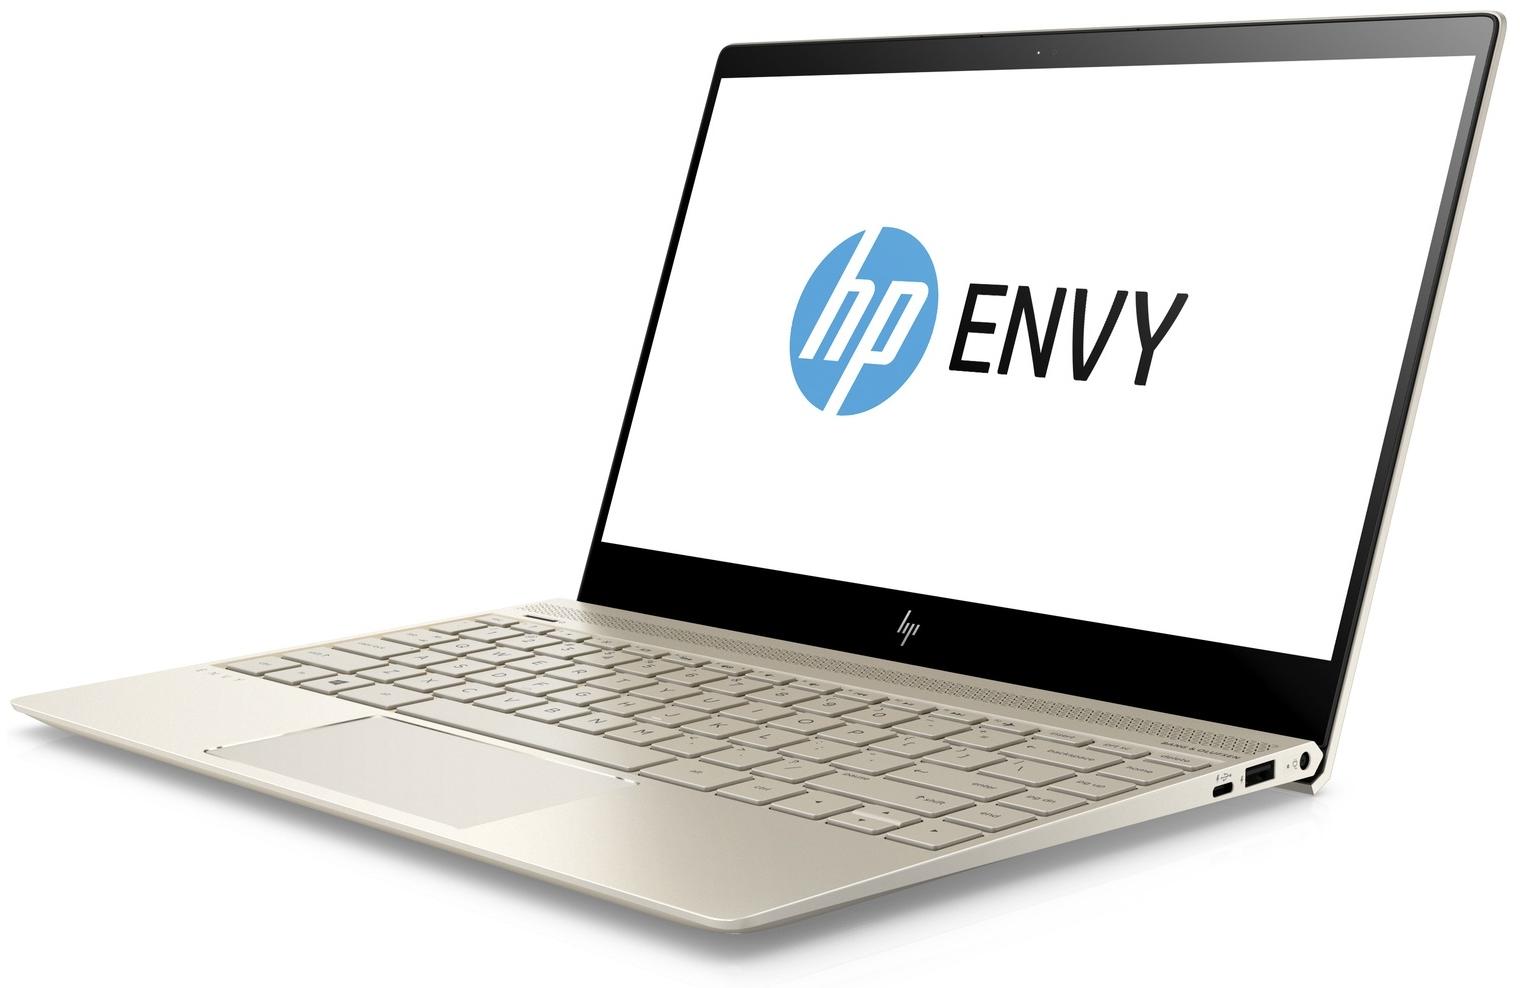   HP Envy 13-ad105ur (2PP94EA)  1